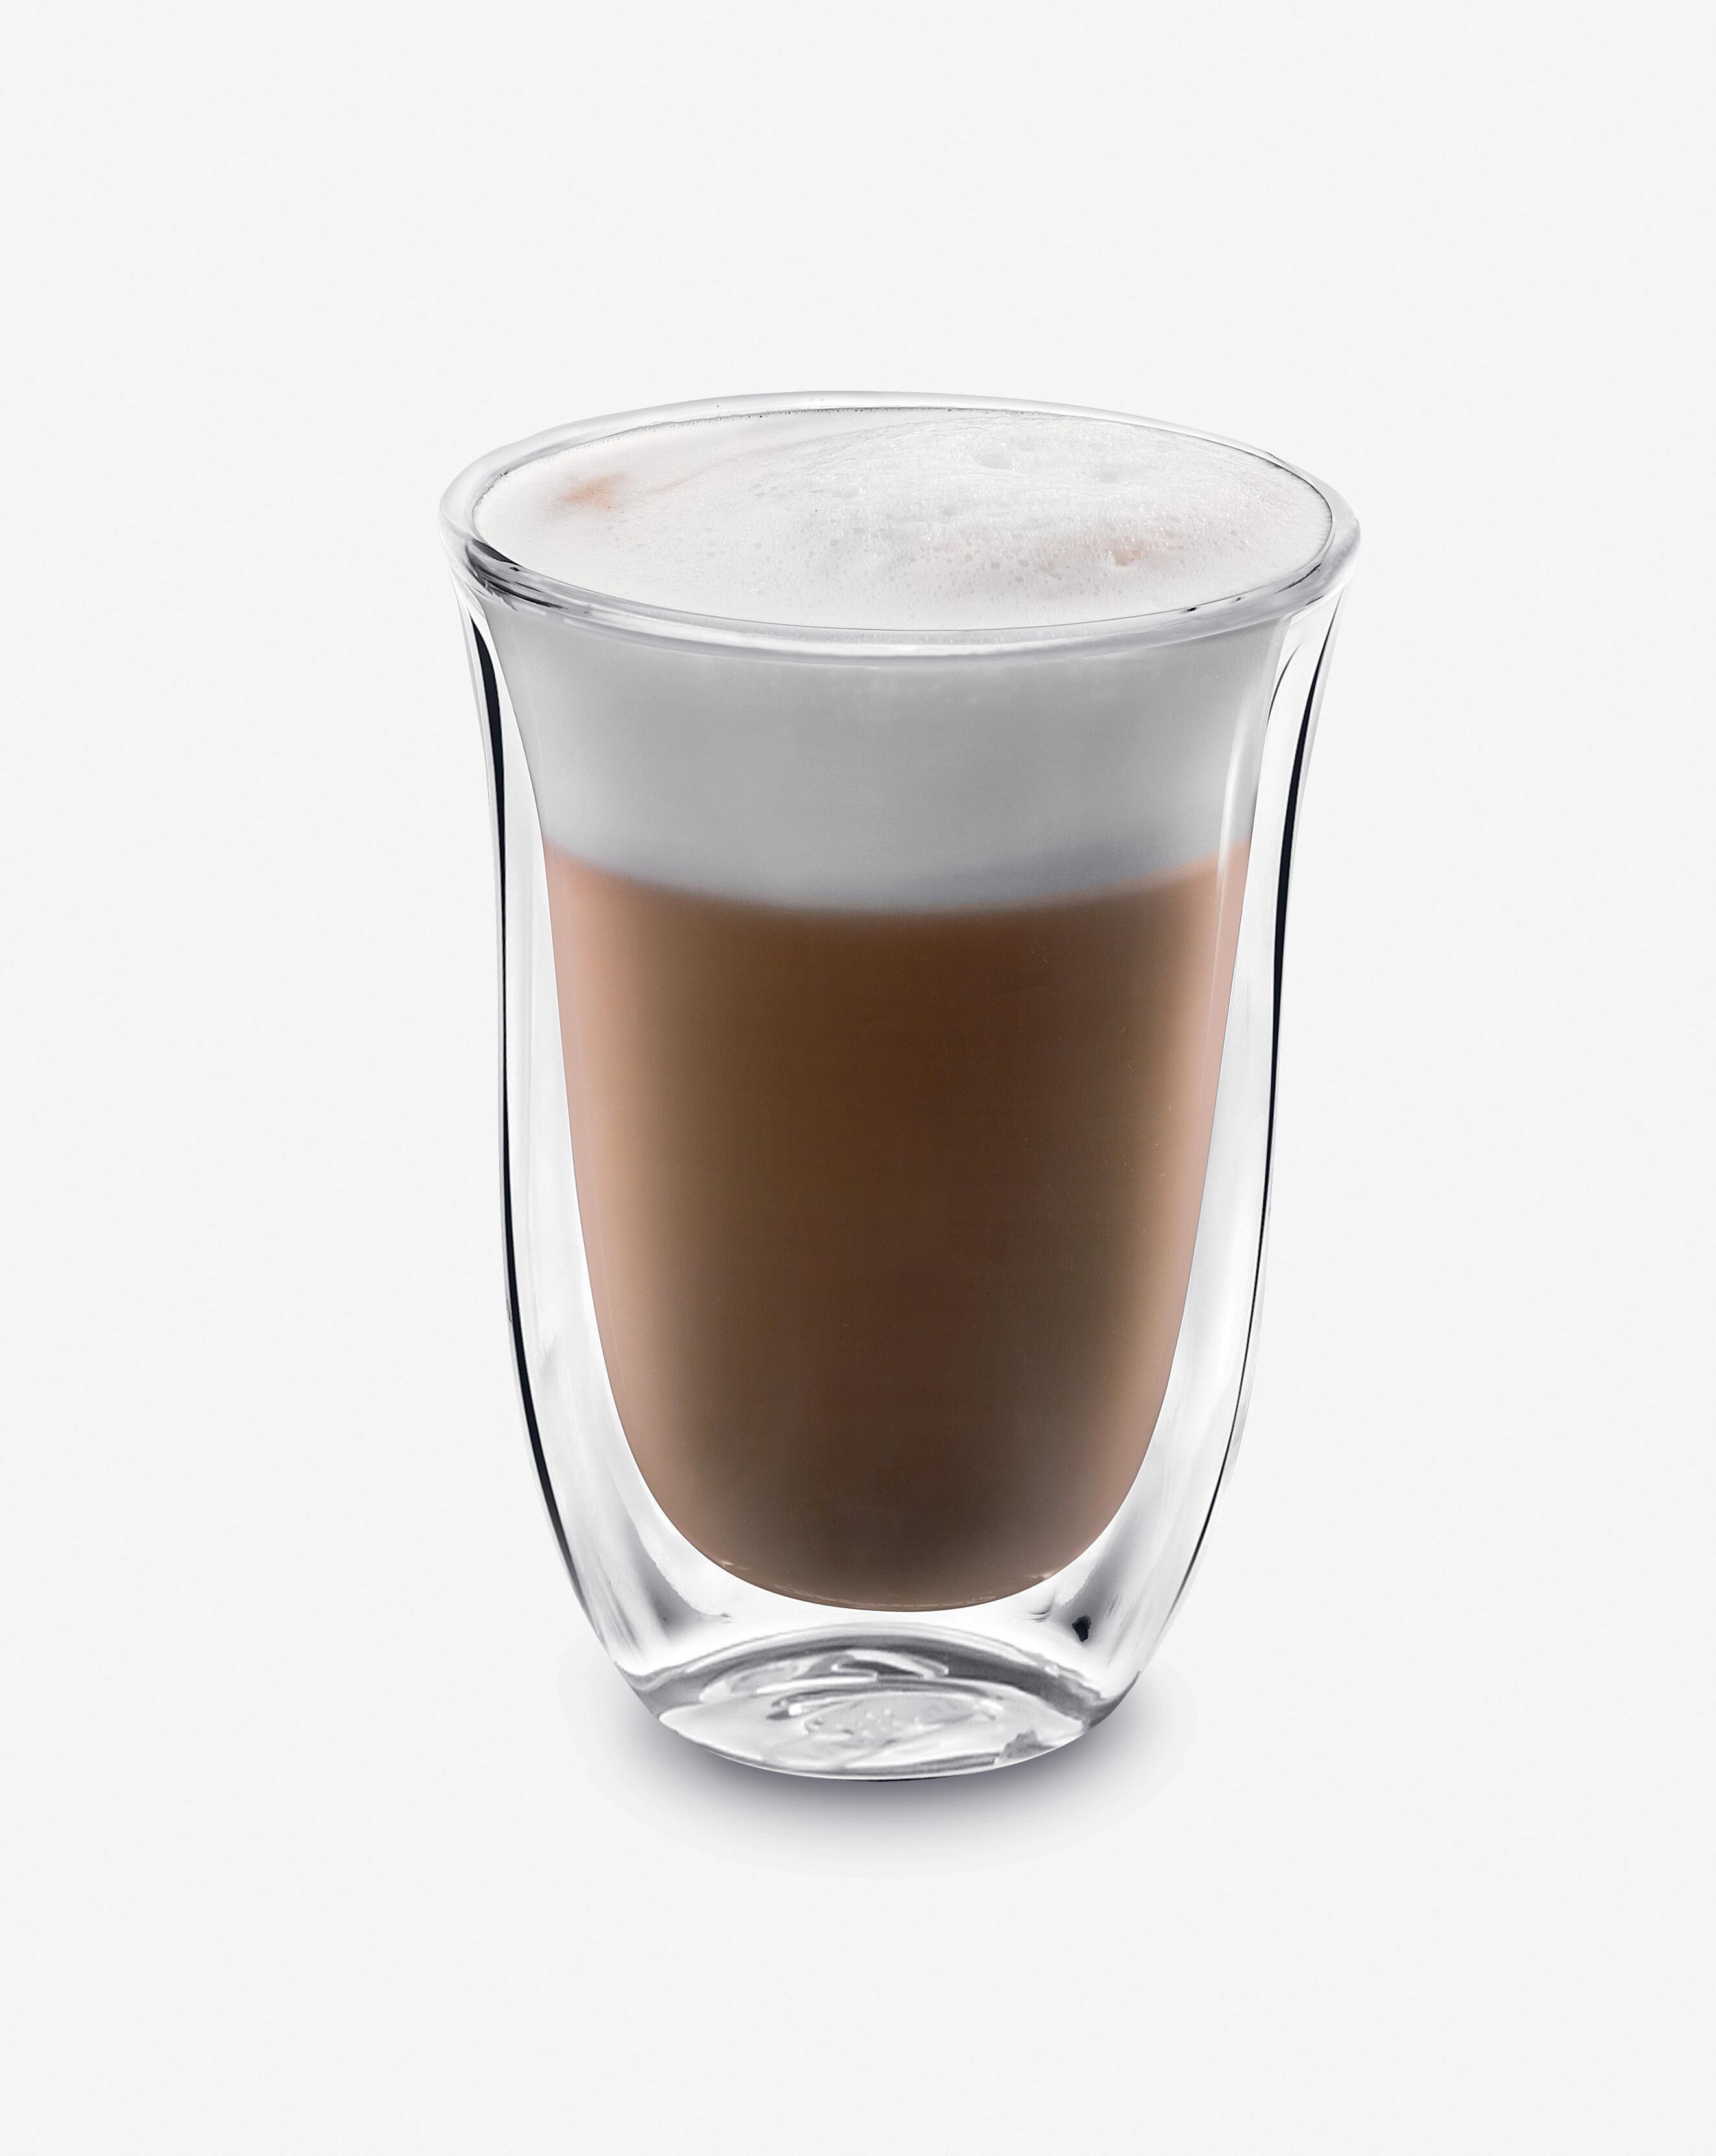 Latte Transparent Macchiato 2erSet DLSC312 Thermoglas DELONGHI Gläser